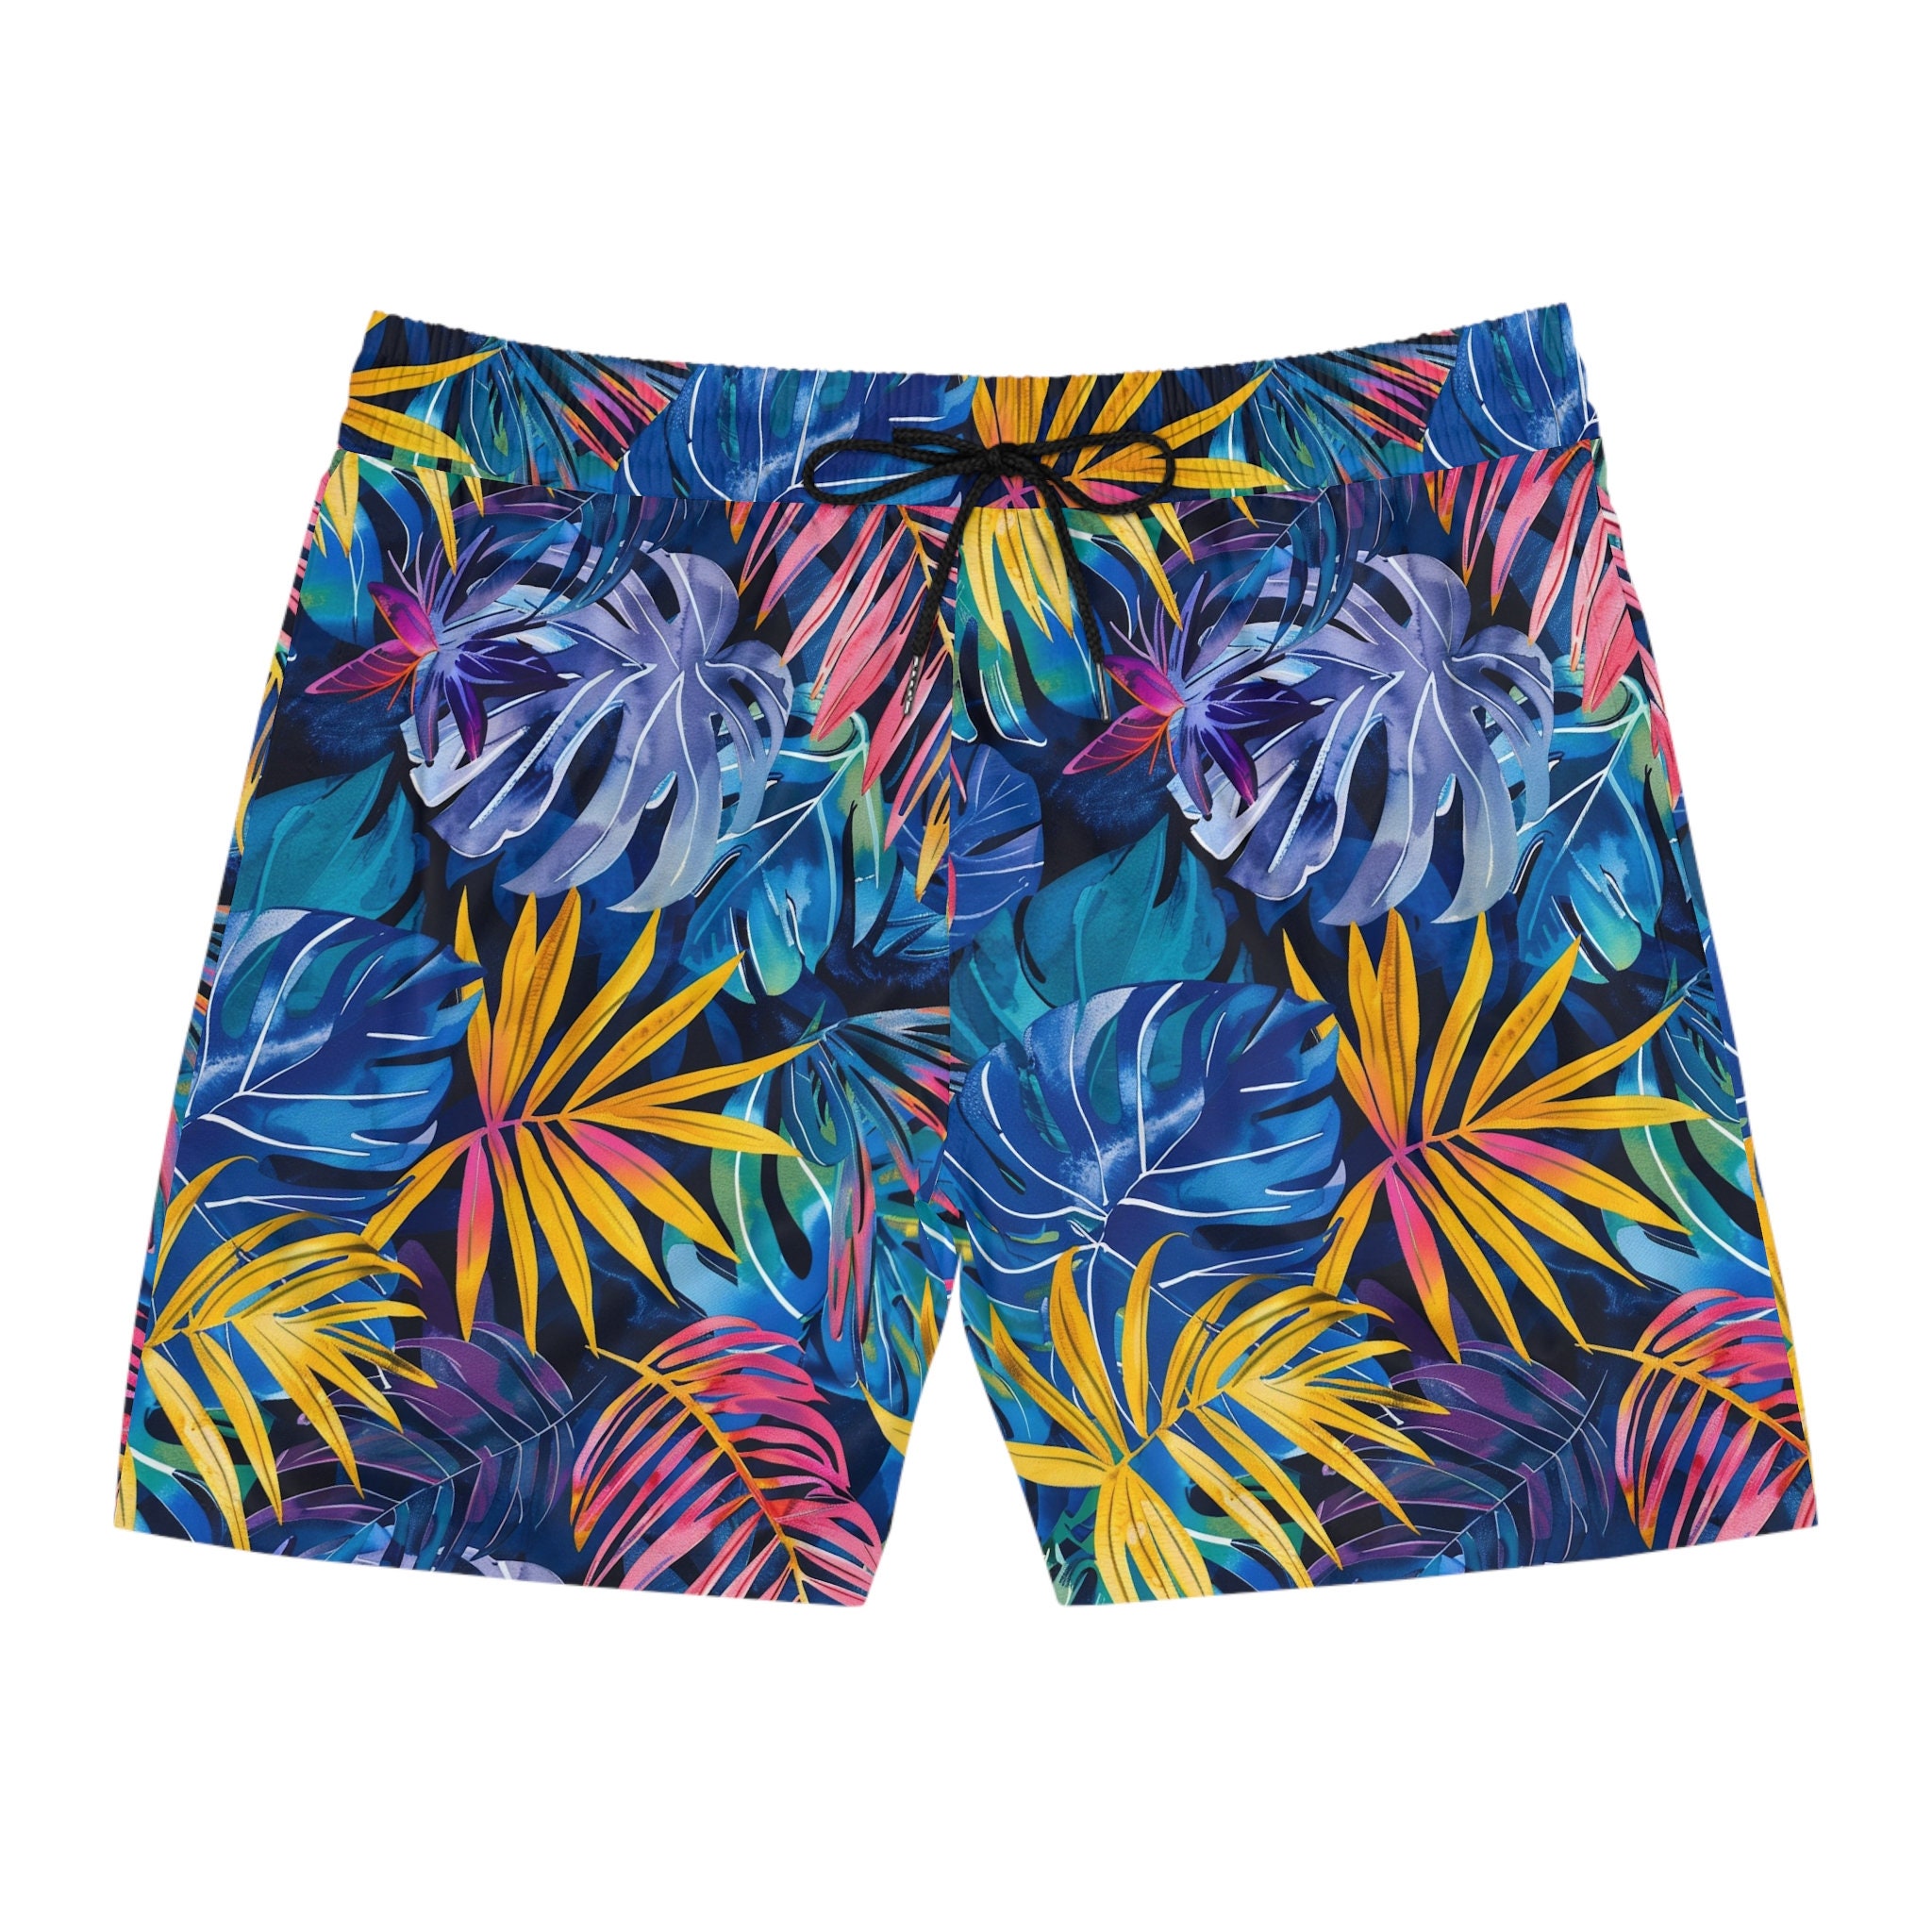 Discover 夏休み ハワイアン ショートパンツ メンズ 3Dショートパンツ 可愛いギフト 男性用ギフト 夏ファッション Summer Travel Vacation Shorts